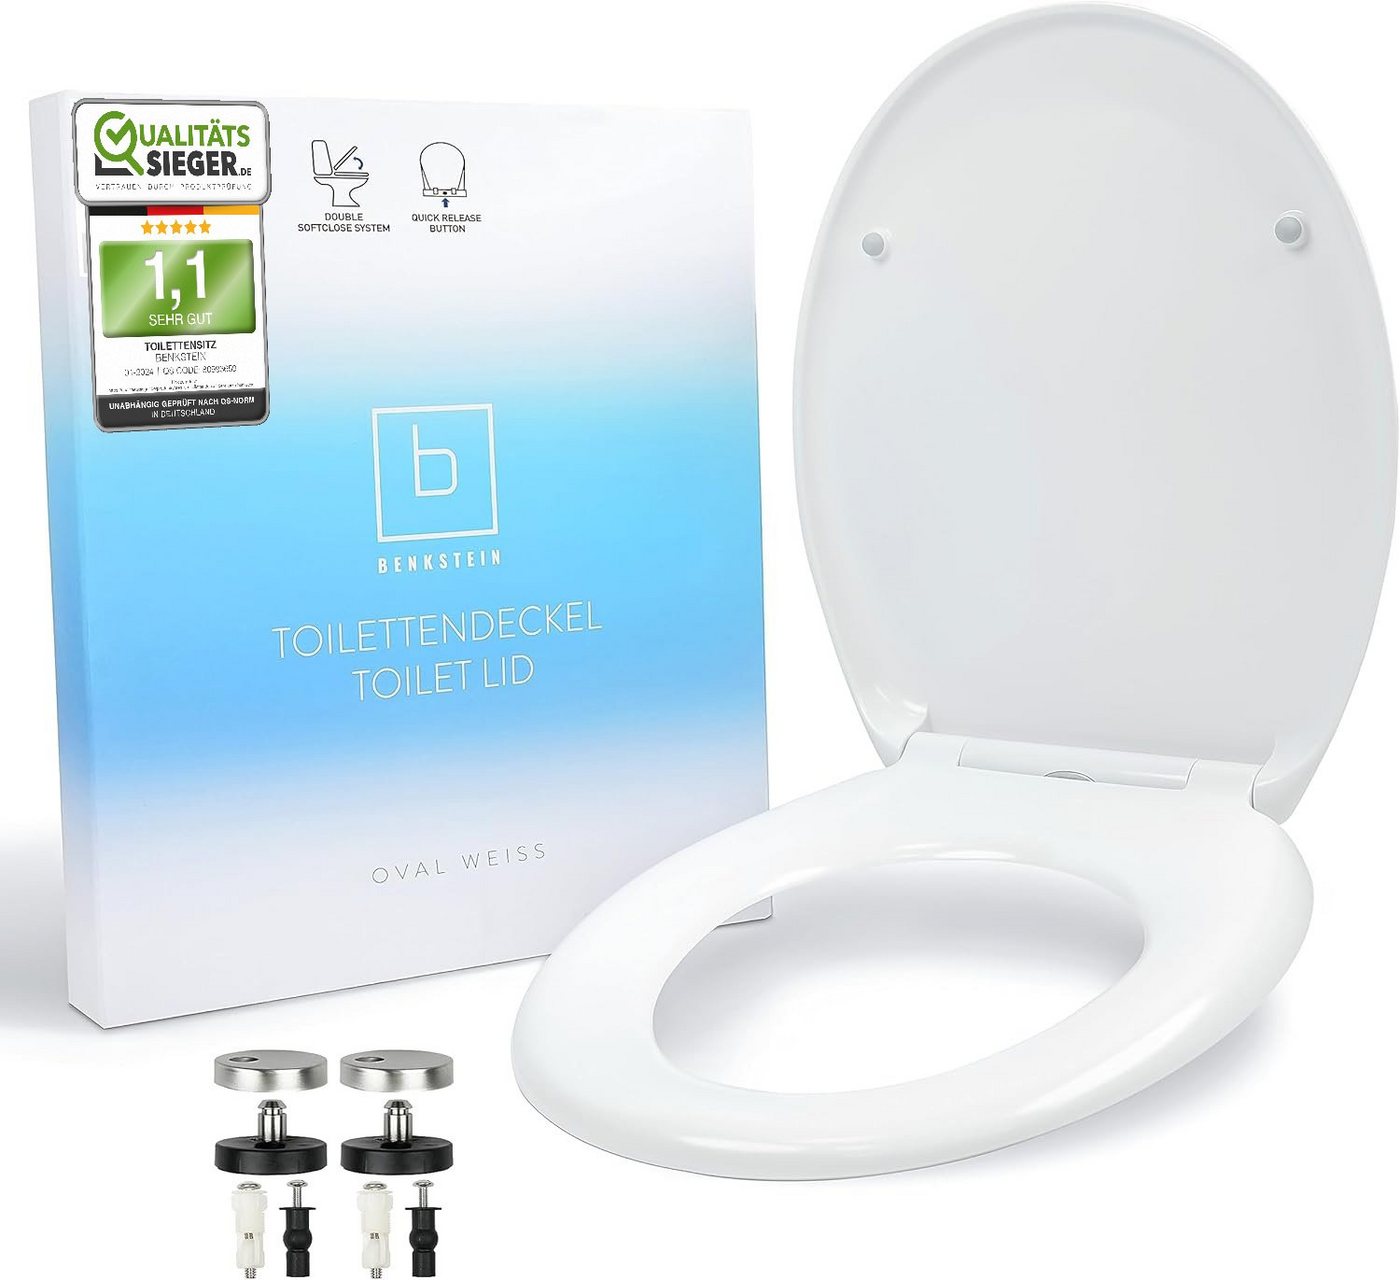 Benkstein WC-Sitz Premium Klodeckel antibakteriell- WC Deckel 2x Quick-Release, Toilettendeckel WC Sitz mit Quick-Release-Funktion und Soft close von Benkstein